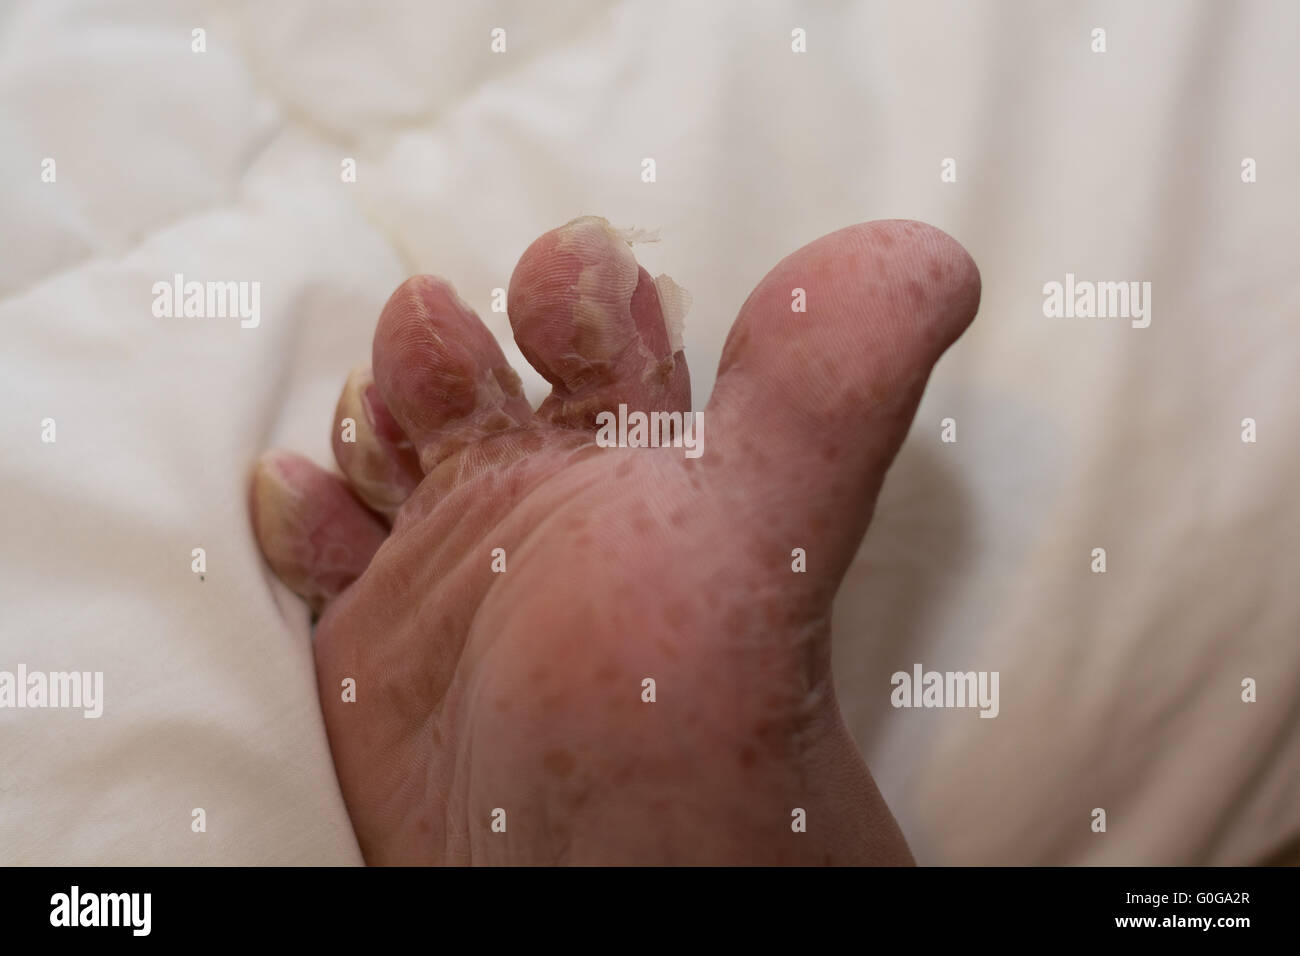 Schälen der Haut nach viralen Hautkrankheit - Closeup Fuß Stockfotografie -  Alamy